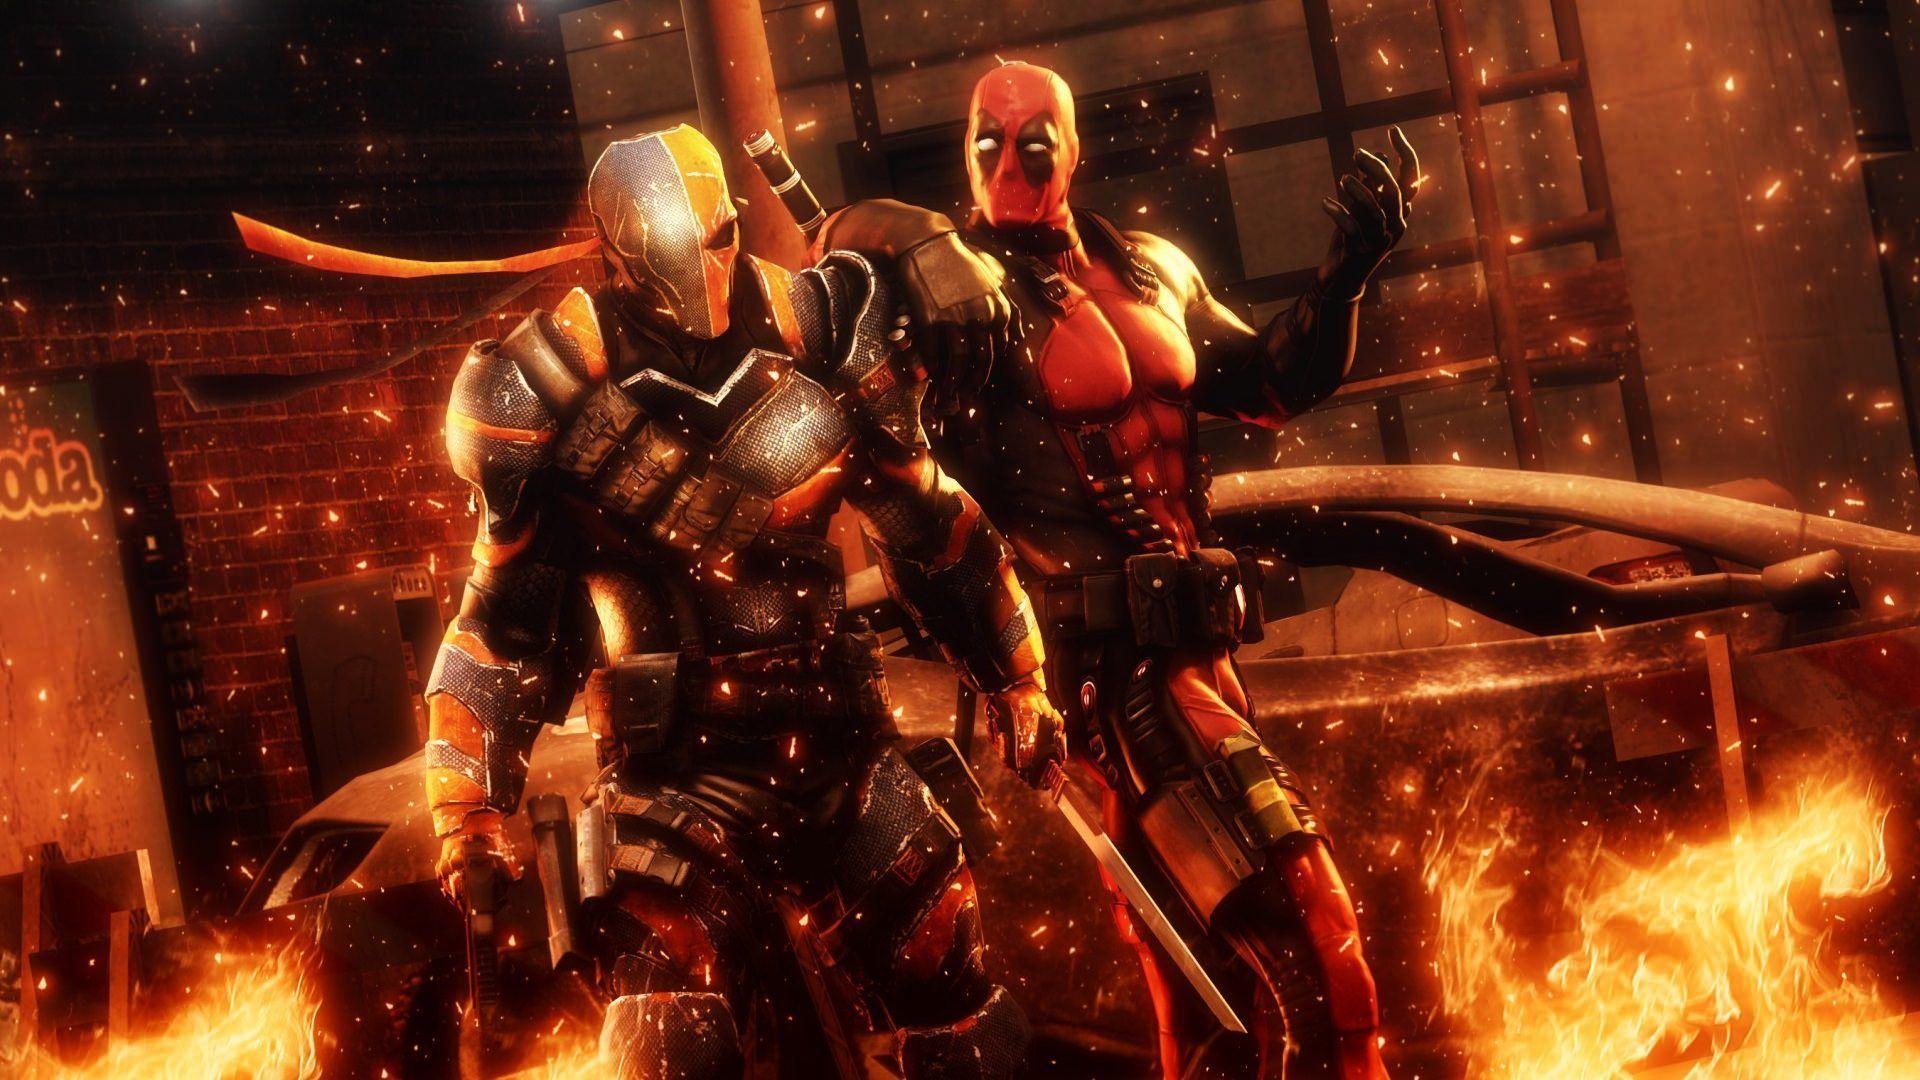 Fight in Fire Deadpool 2016 Game Wallpaper